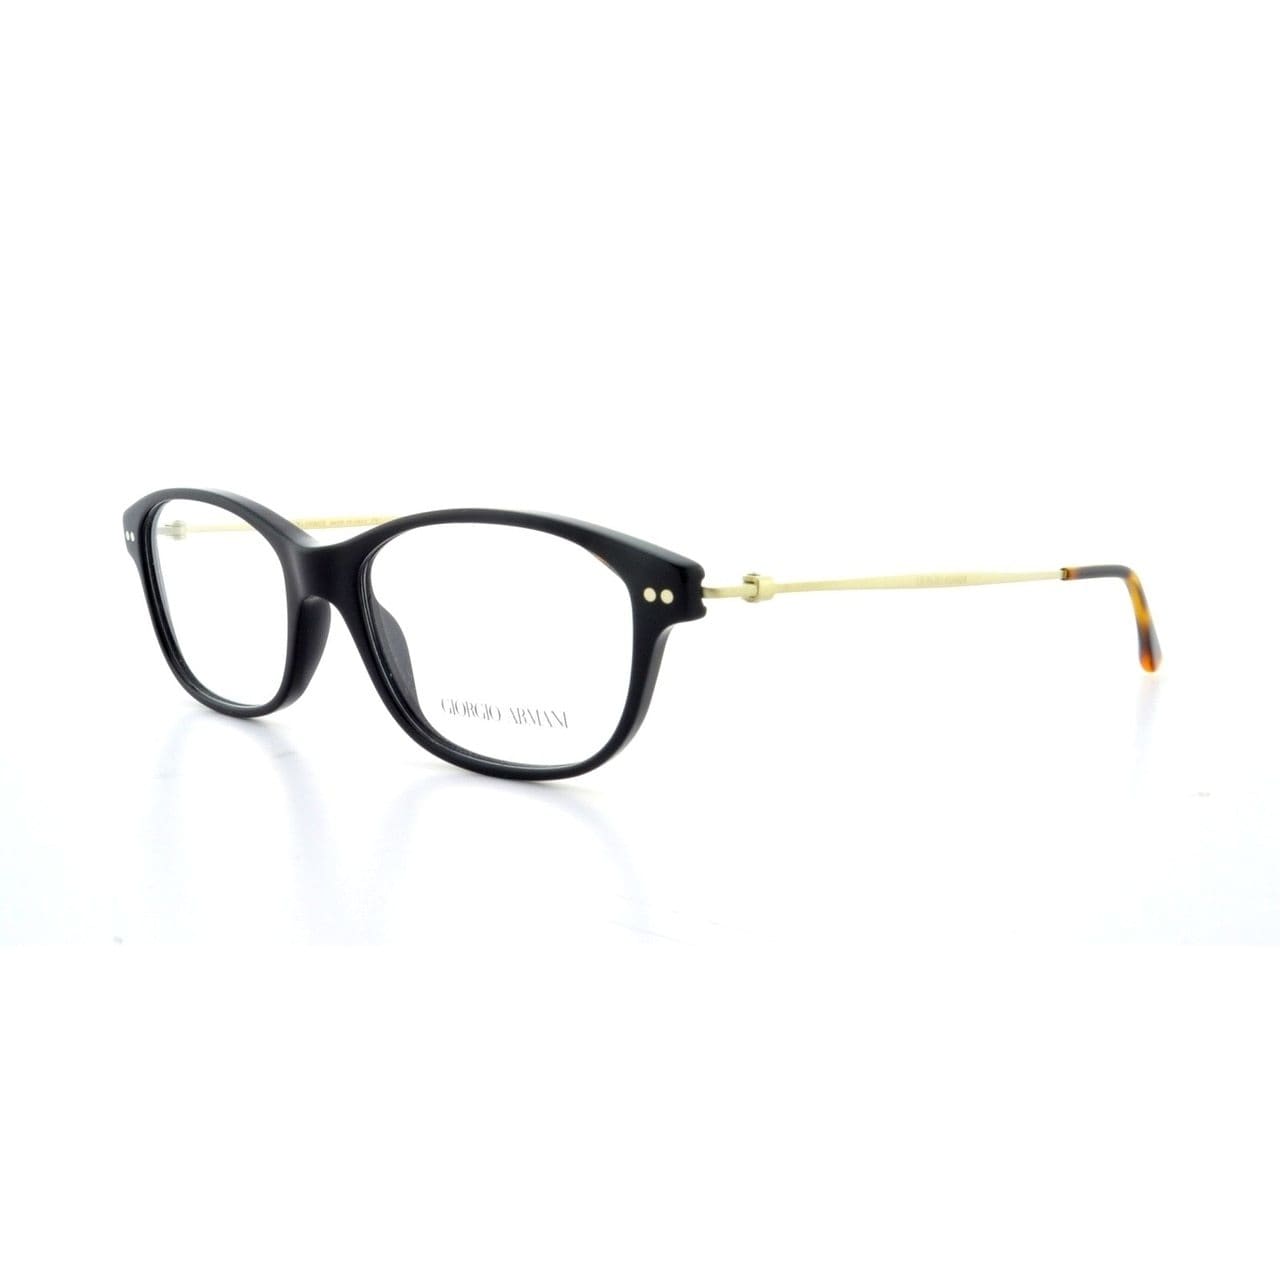 Giorgio Armani AR7007 5017 Black Full Rim Rectangular Eyeglasses Frames for Women 8053672032444